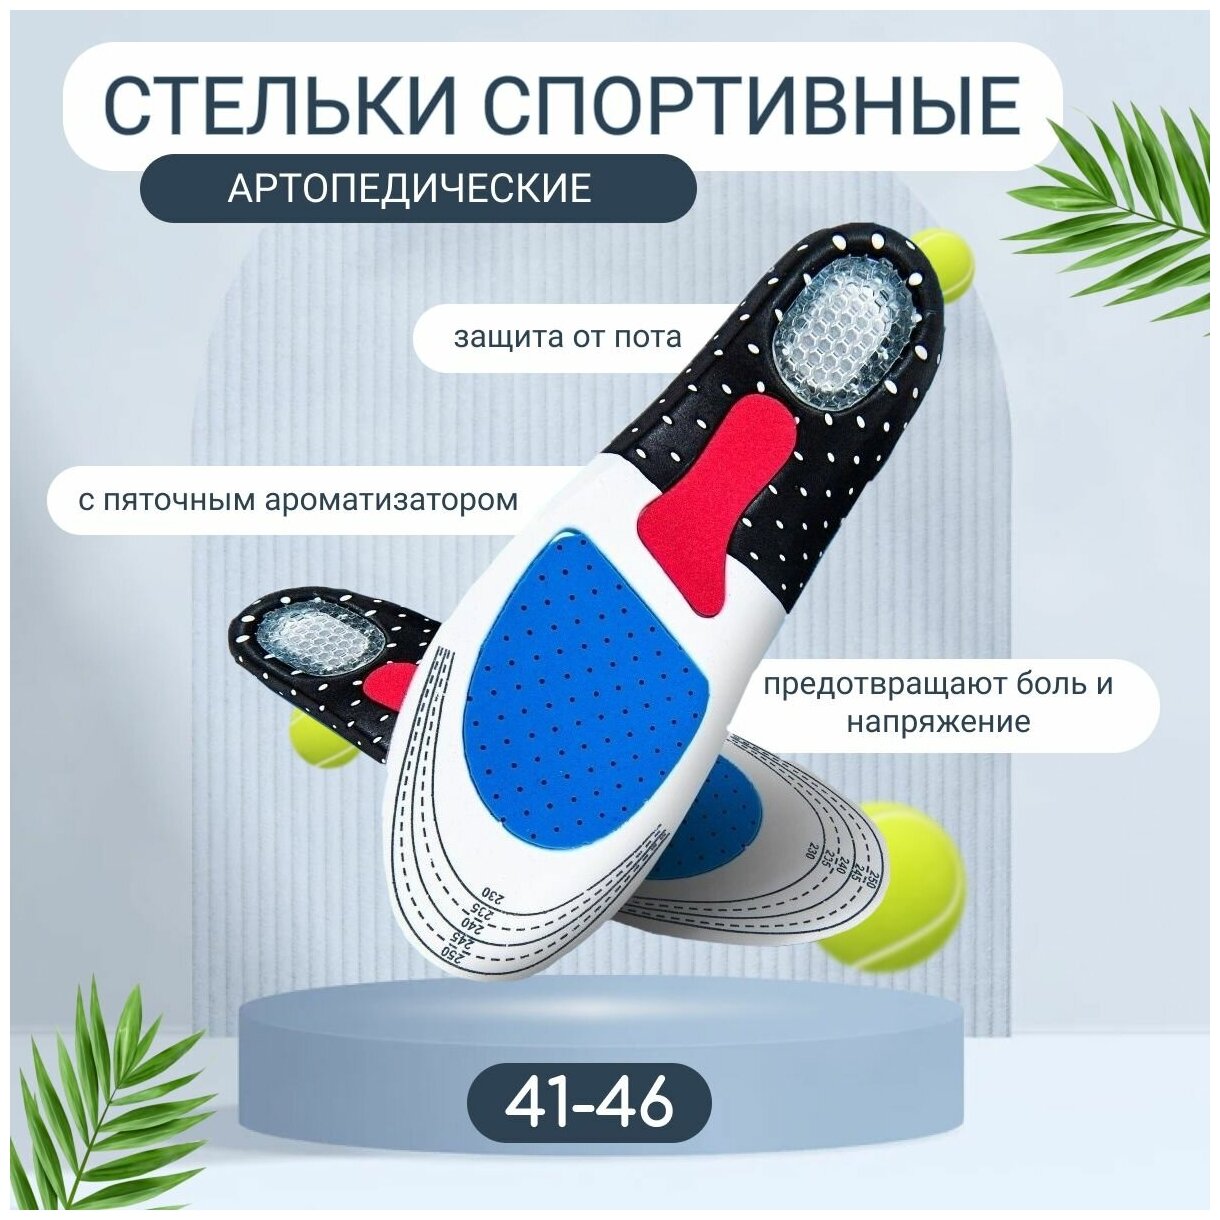 Спортивные антибактериальные ортопедические стельки для обуви с силиконовой амортизирующей вставкой для пятки, размер 41-46